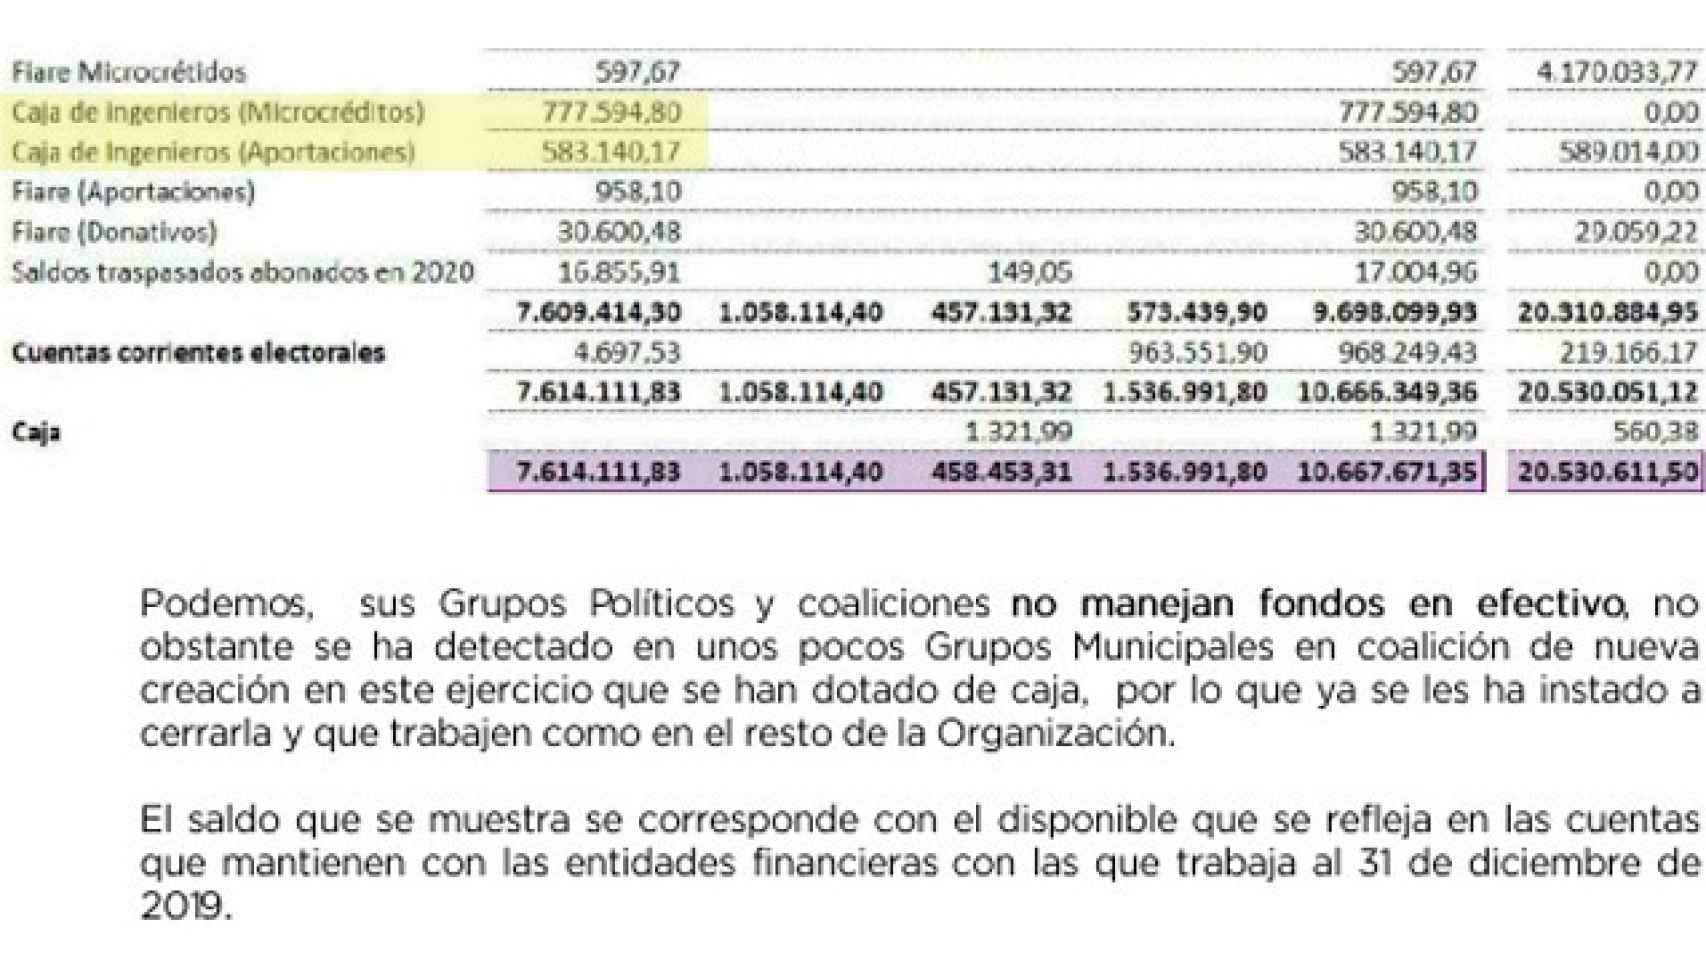 Otras dos de las cinco cuentas que Podemos tenía en la Caja de Ingenieros en 2019. Son las de microcréditos y aportaciones.